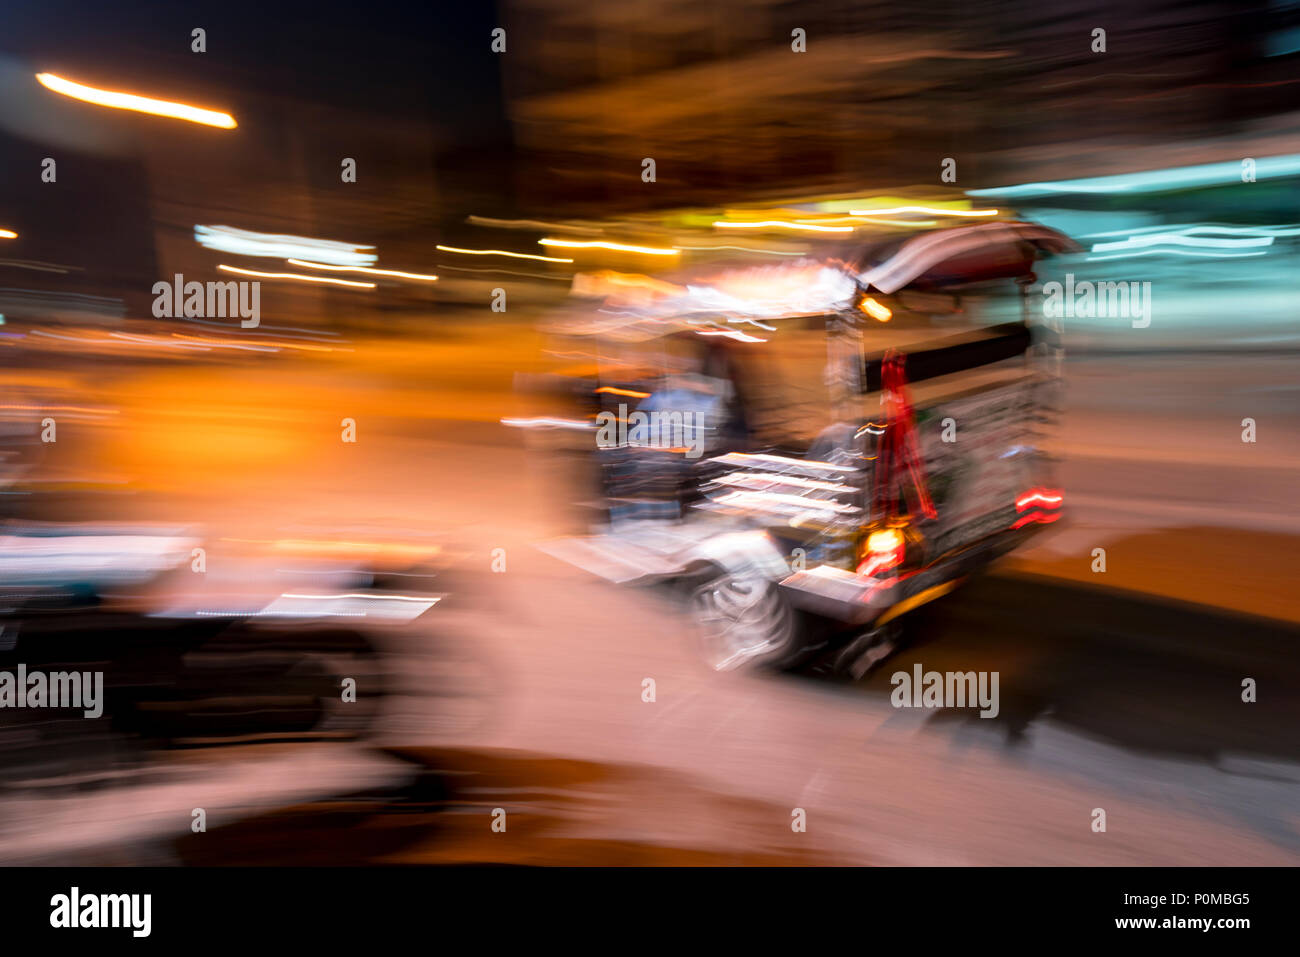 Abstrakte panning Technik schaffen Bewegung&Unschärfe eines Tuktuk racing Vergangenheit in der Nacht in den Straßen von Chiang Mai im Norden von Thailand Stockfoto